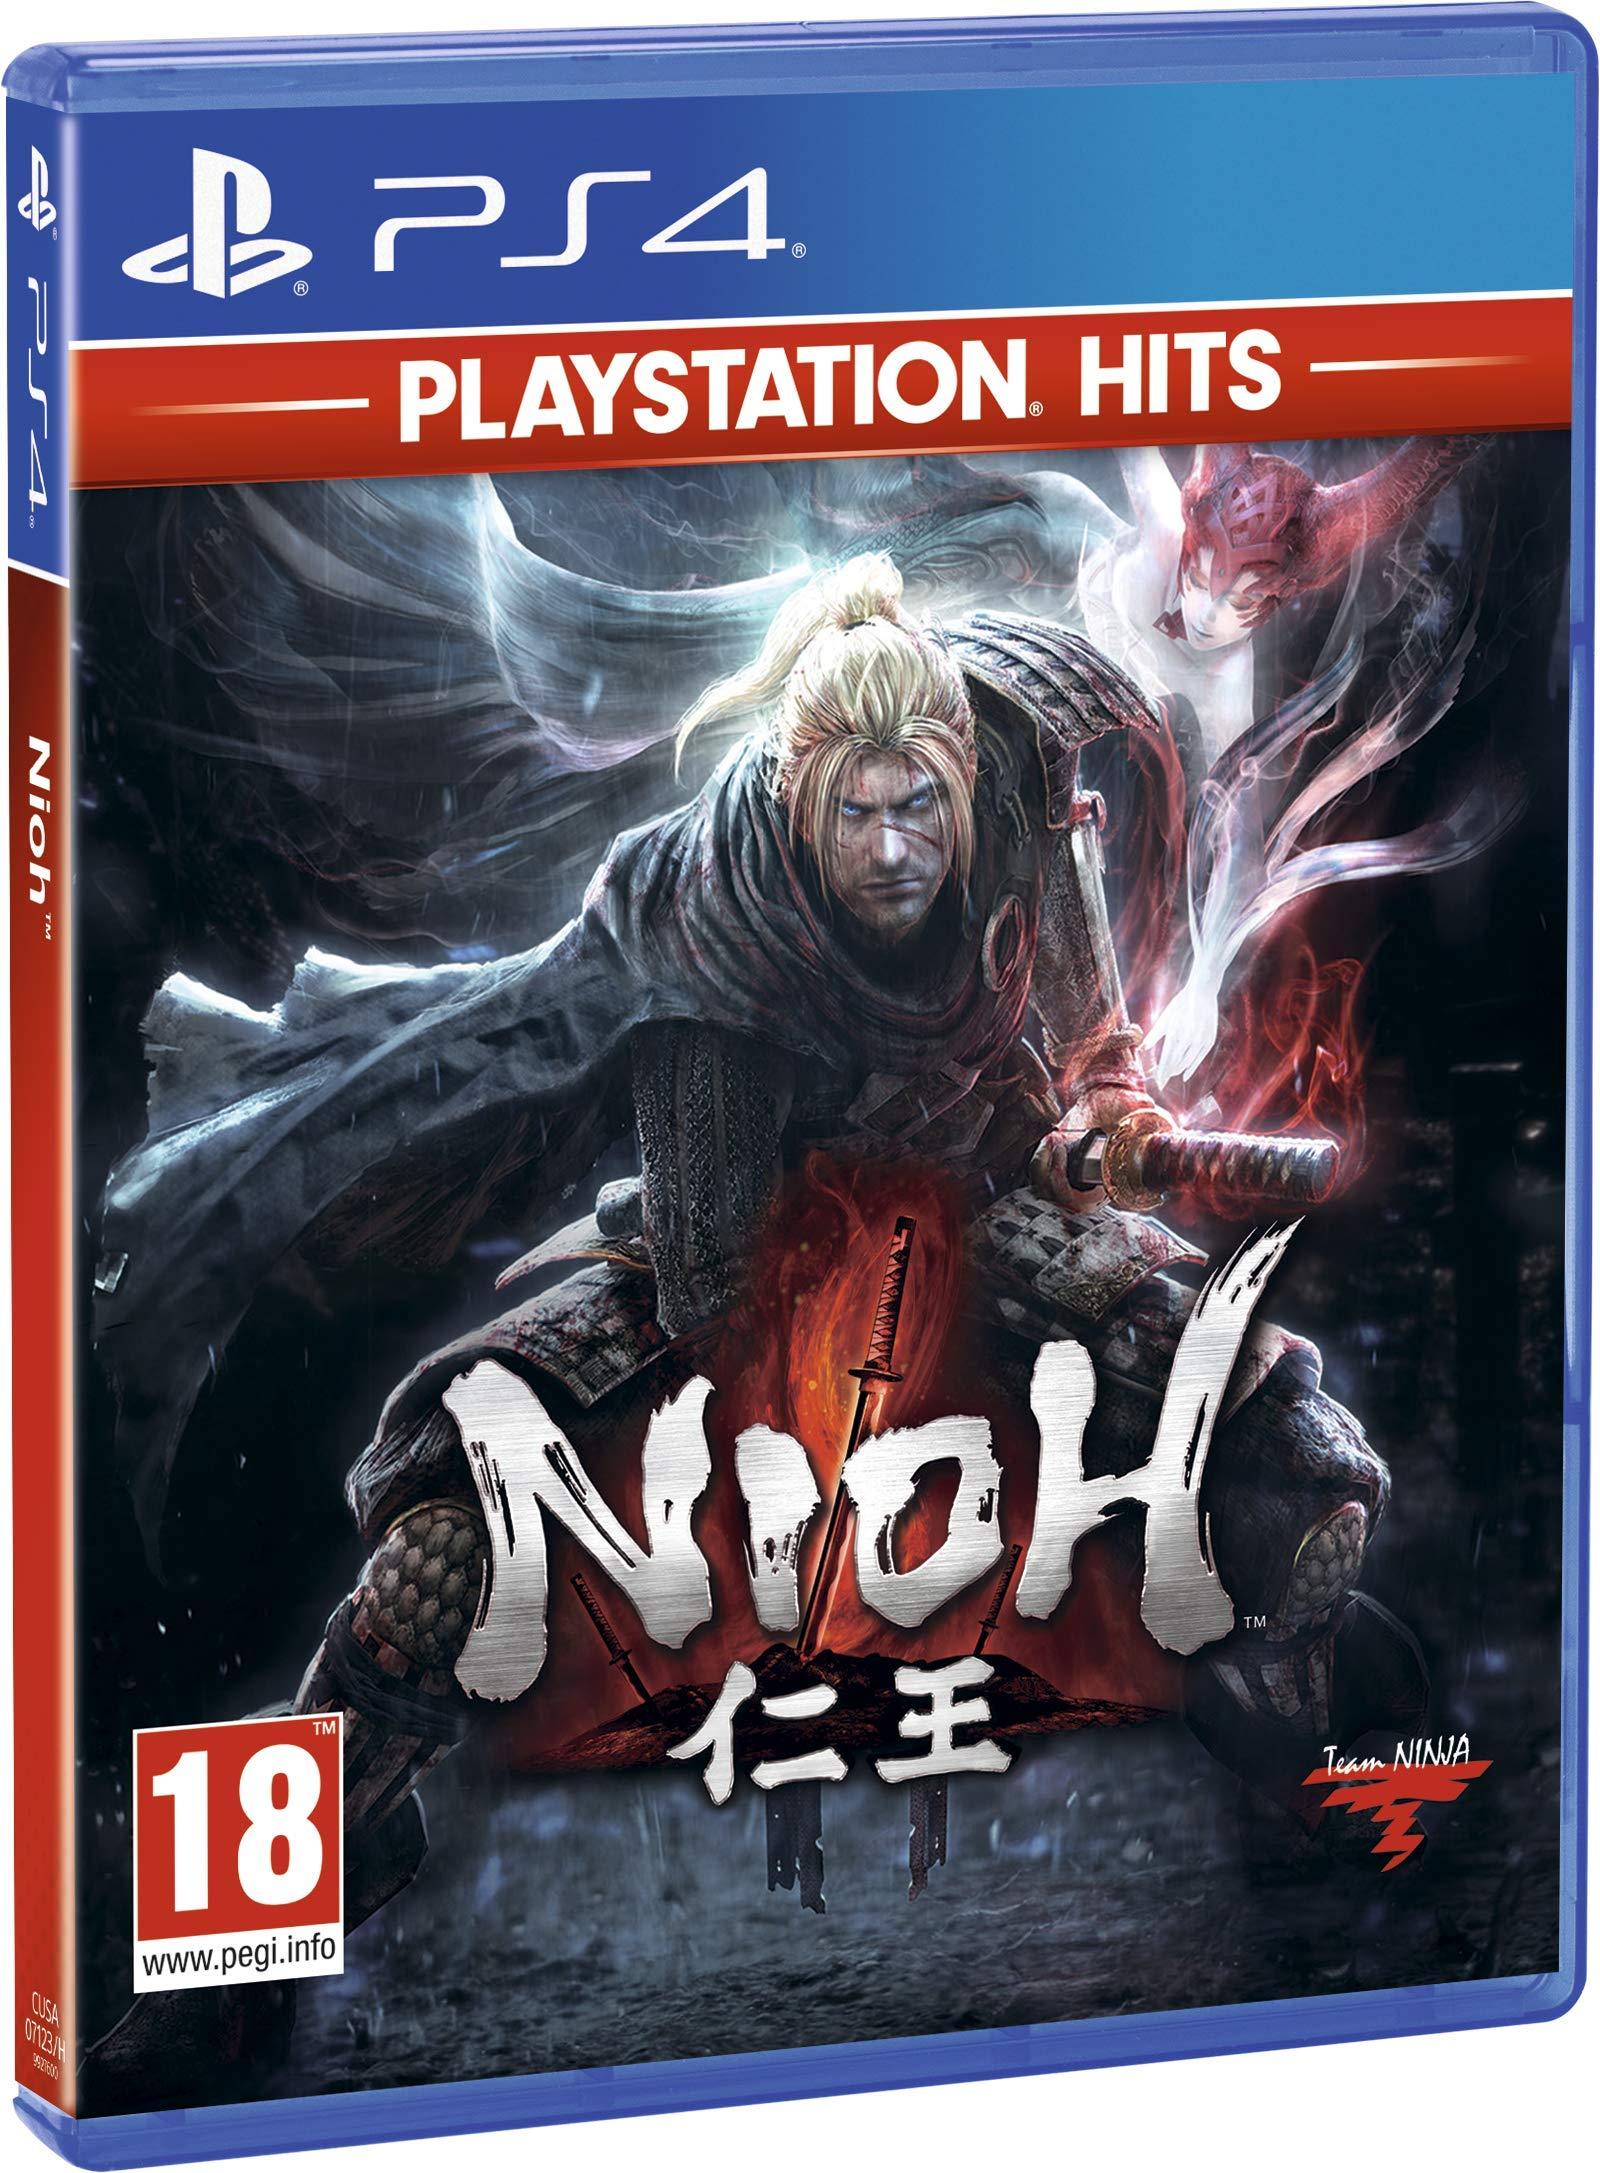 PlayStation Hits Nioh - PlayStation 4 - Want a New Gadget